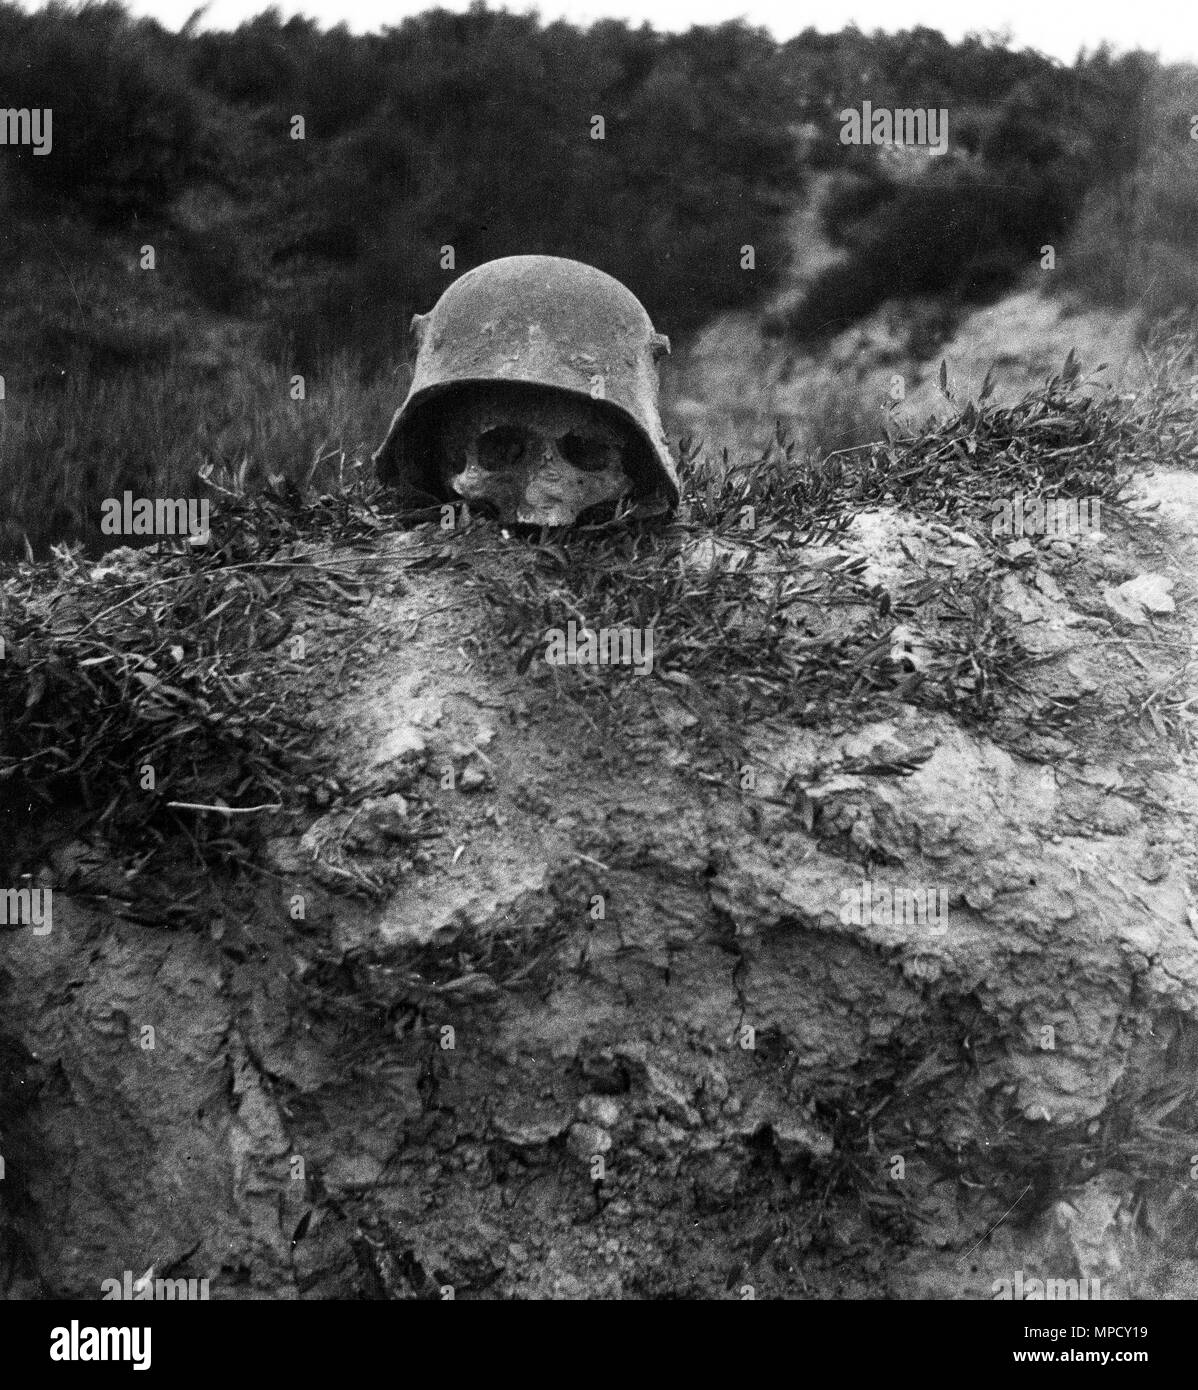 Crâne humain à l'intérieur de casque militaire allemand Seconde Guerre mondiale Un Verdun France 1918 Banque D'Images